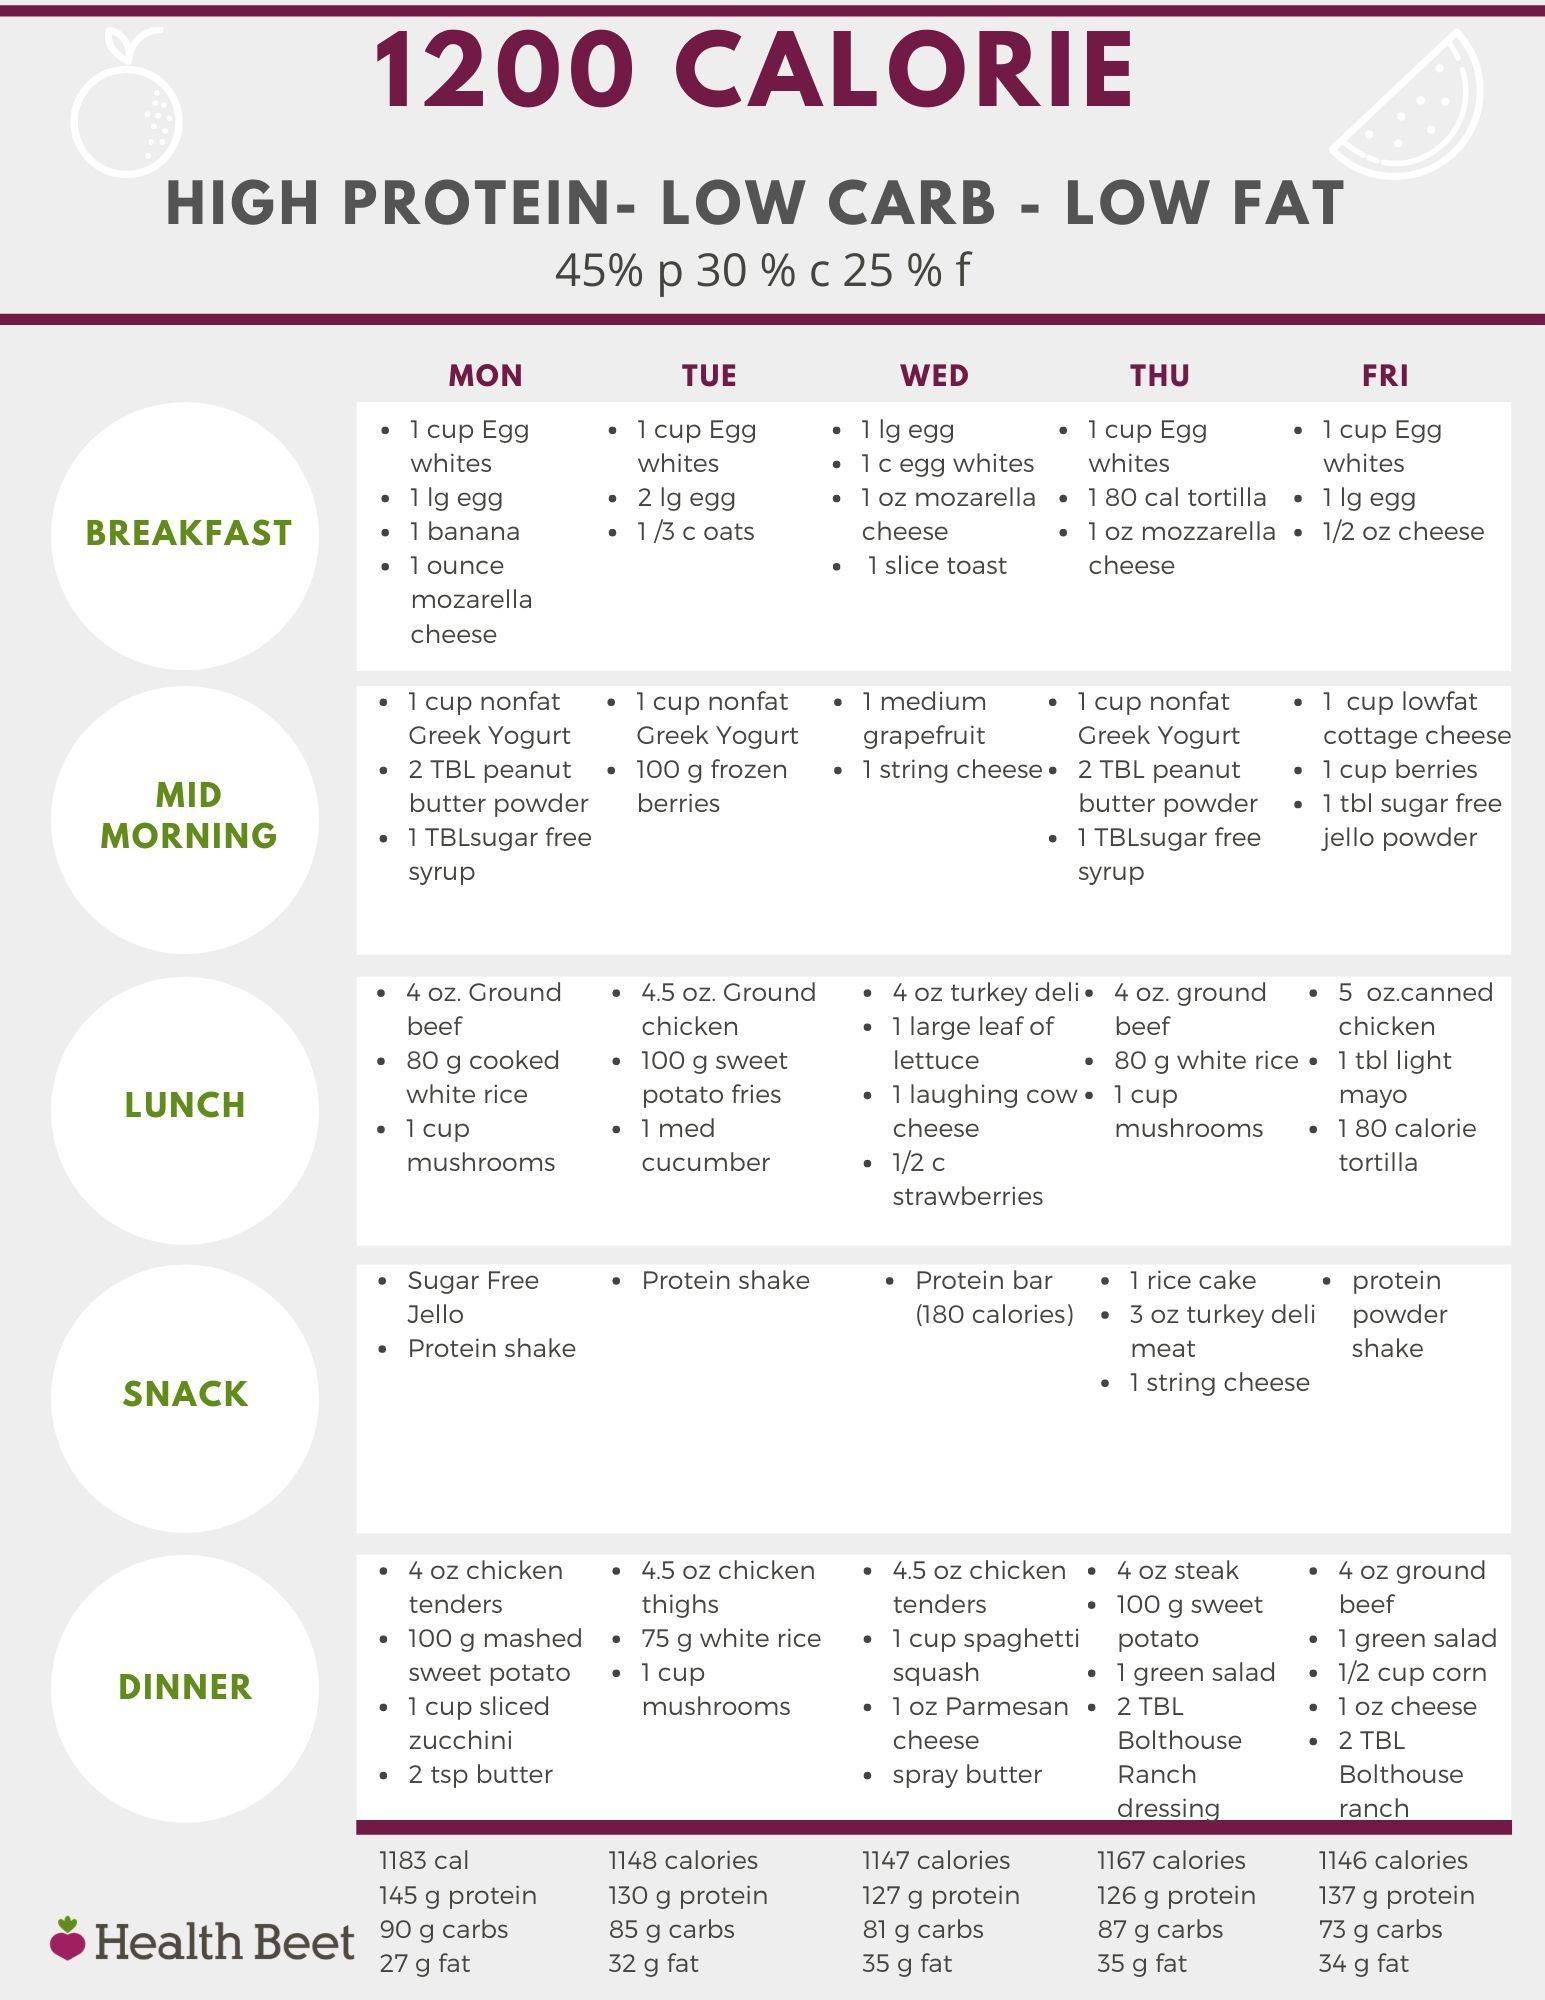 Низкоуглеводная диета / особенности, плюсы и минусы, меню на неделю – статья из рубрики "еда и вес" на food.ru